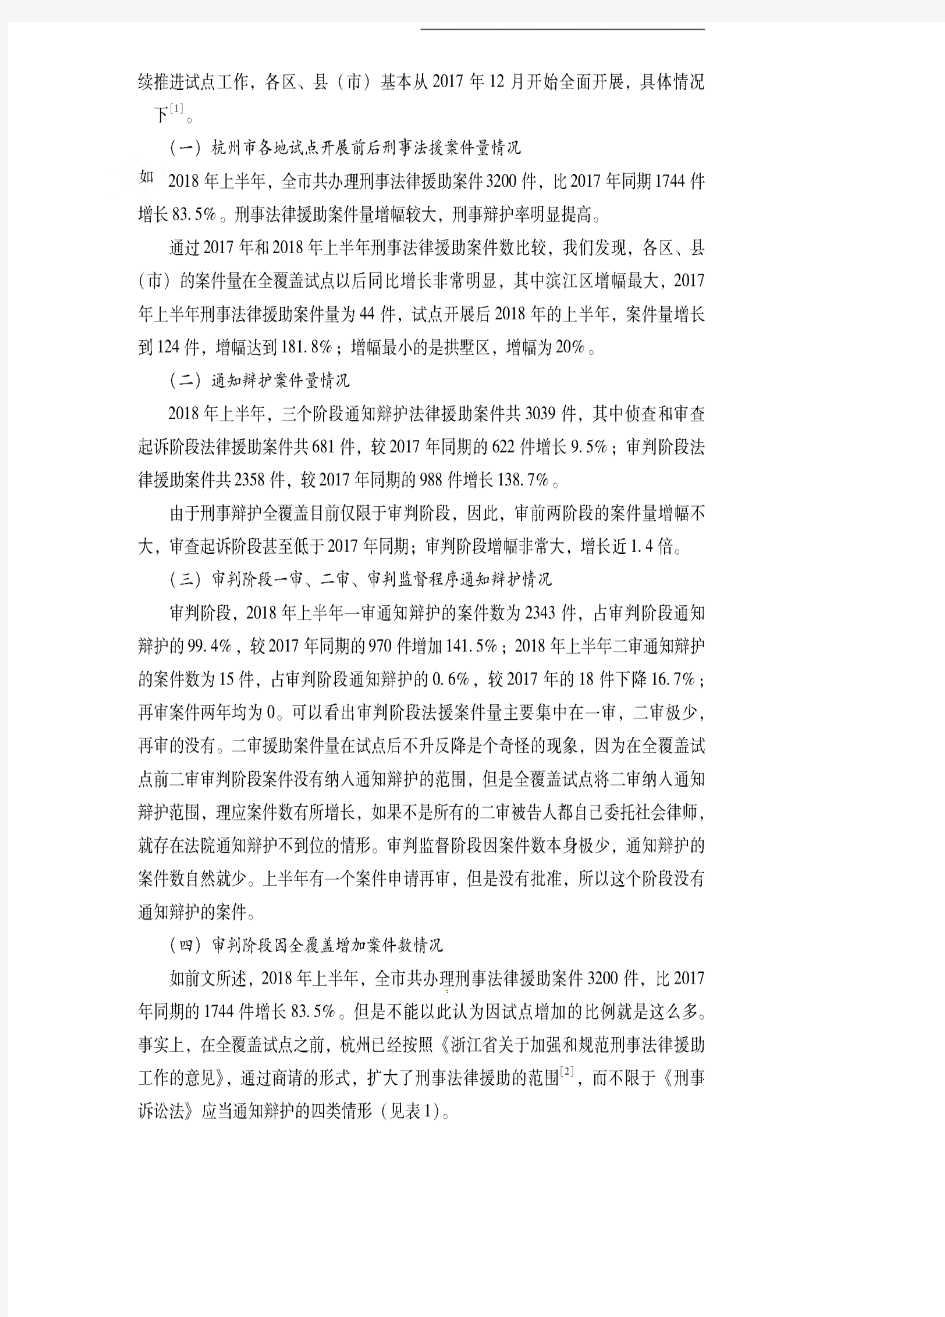 刑事案件律师辩护全覆盖的实践和思考——以杭州市为例